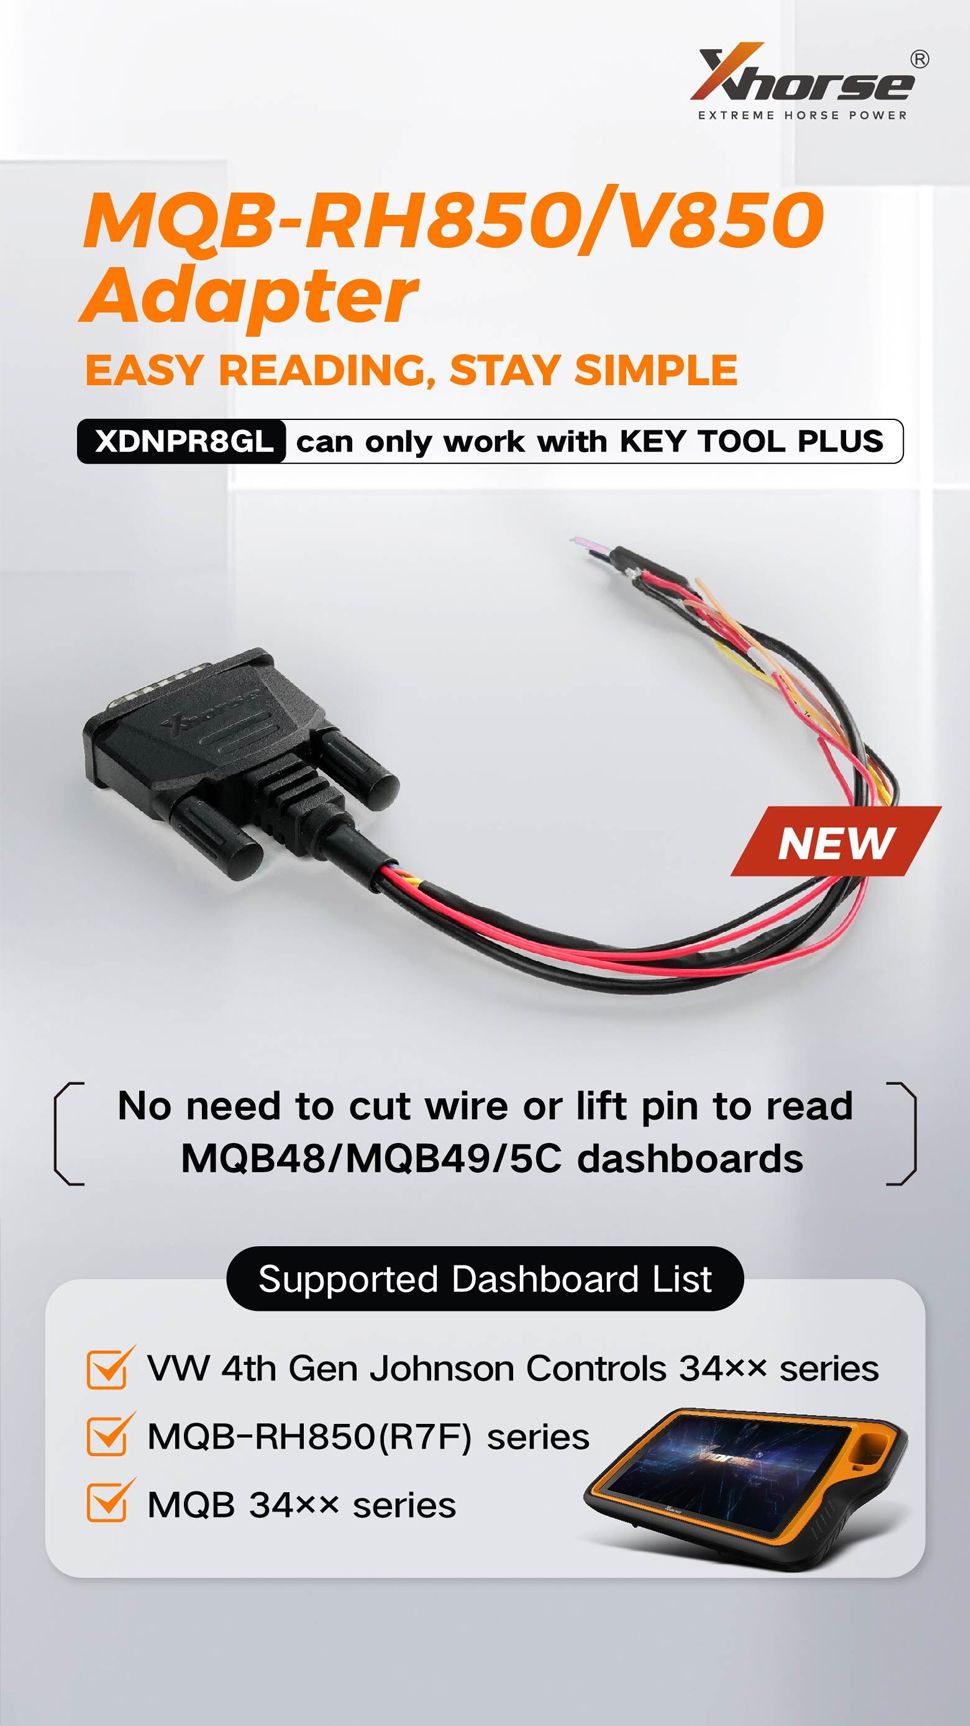 XHORSE XDNPR8GL MQB-RH850/V850 Adapter nur mit Key Tool Plus verwendet